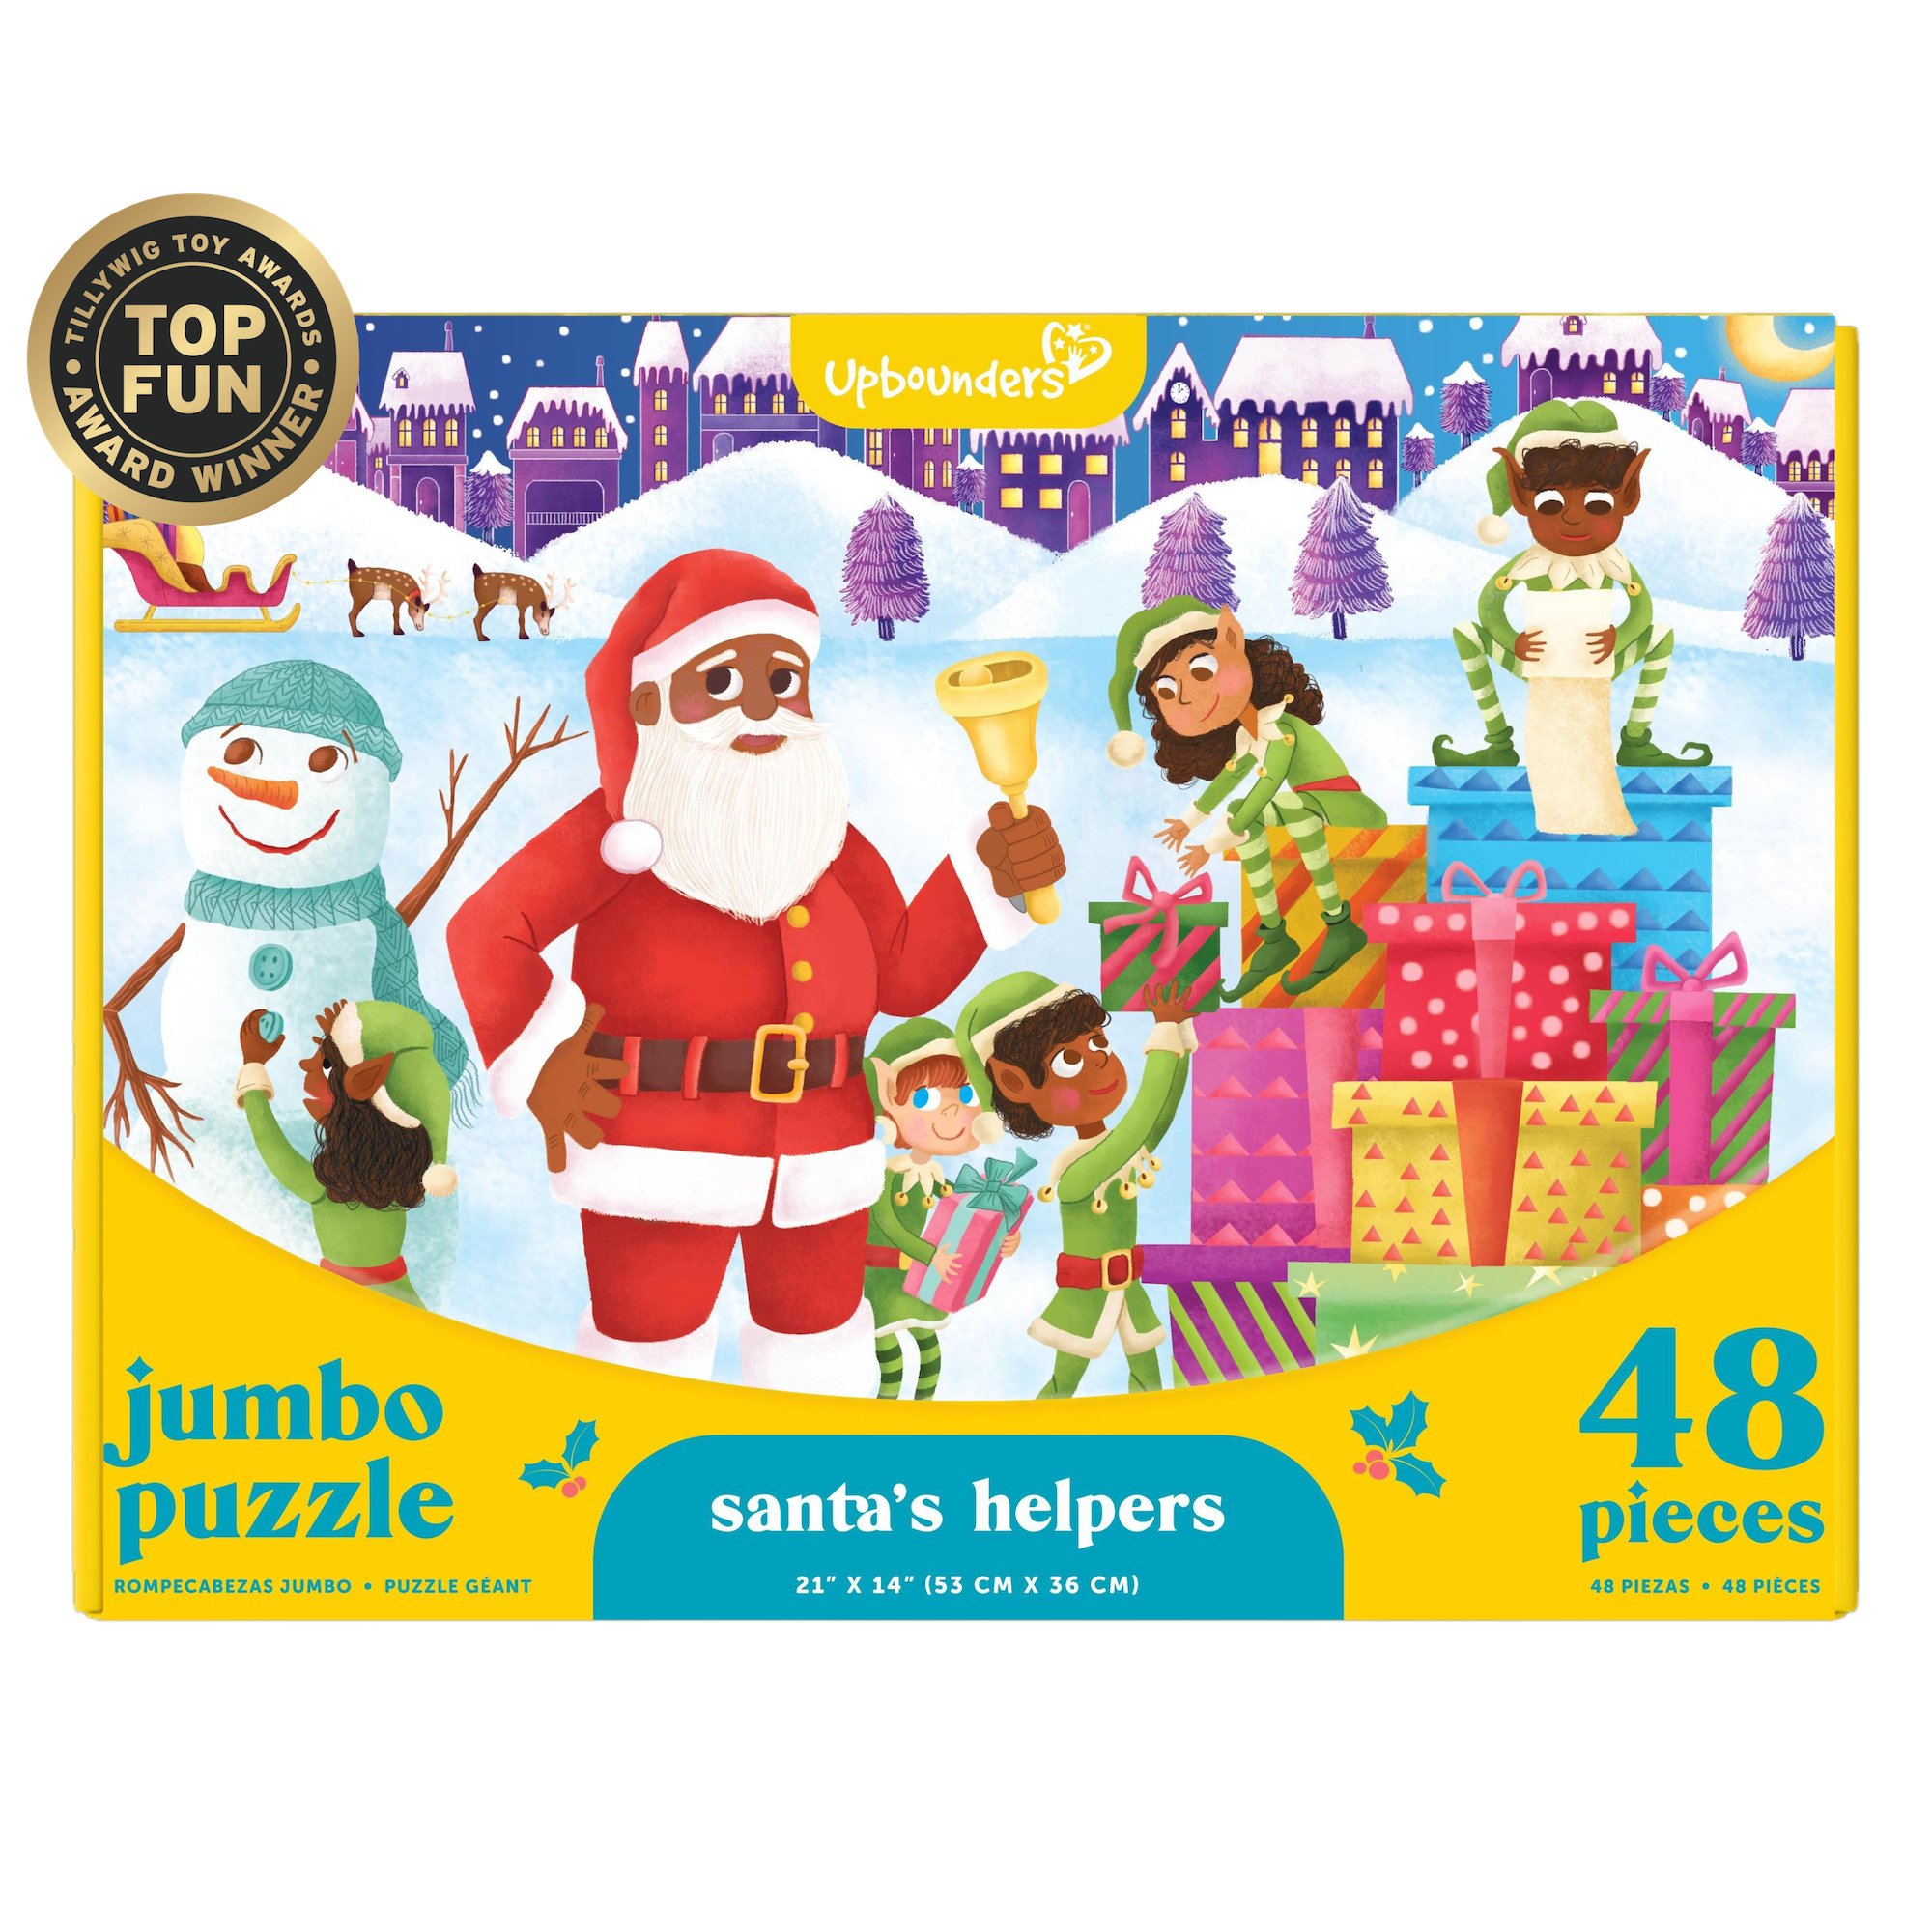 Upbounders® Santa's Helper's 48 PC Puzzle with Black/Brown Santa / $18.99